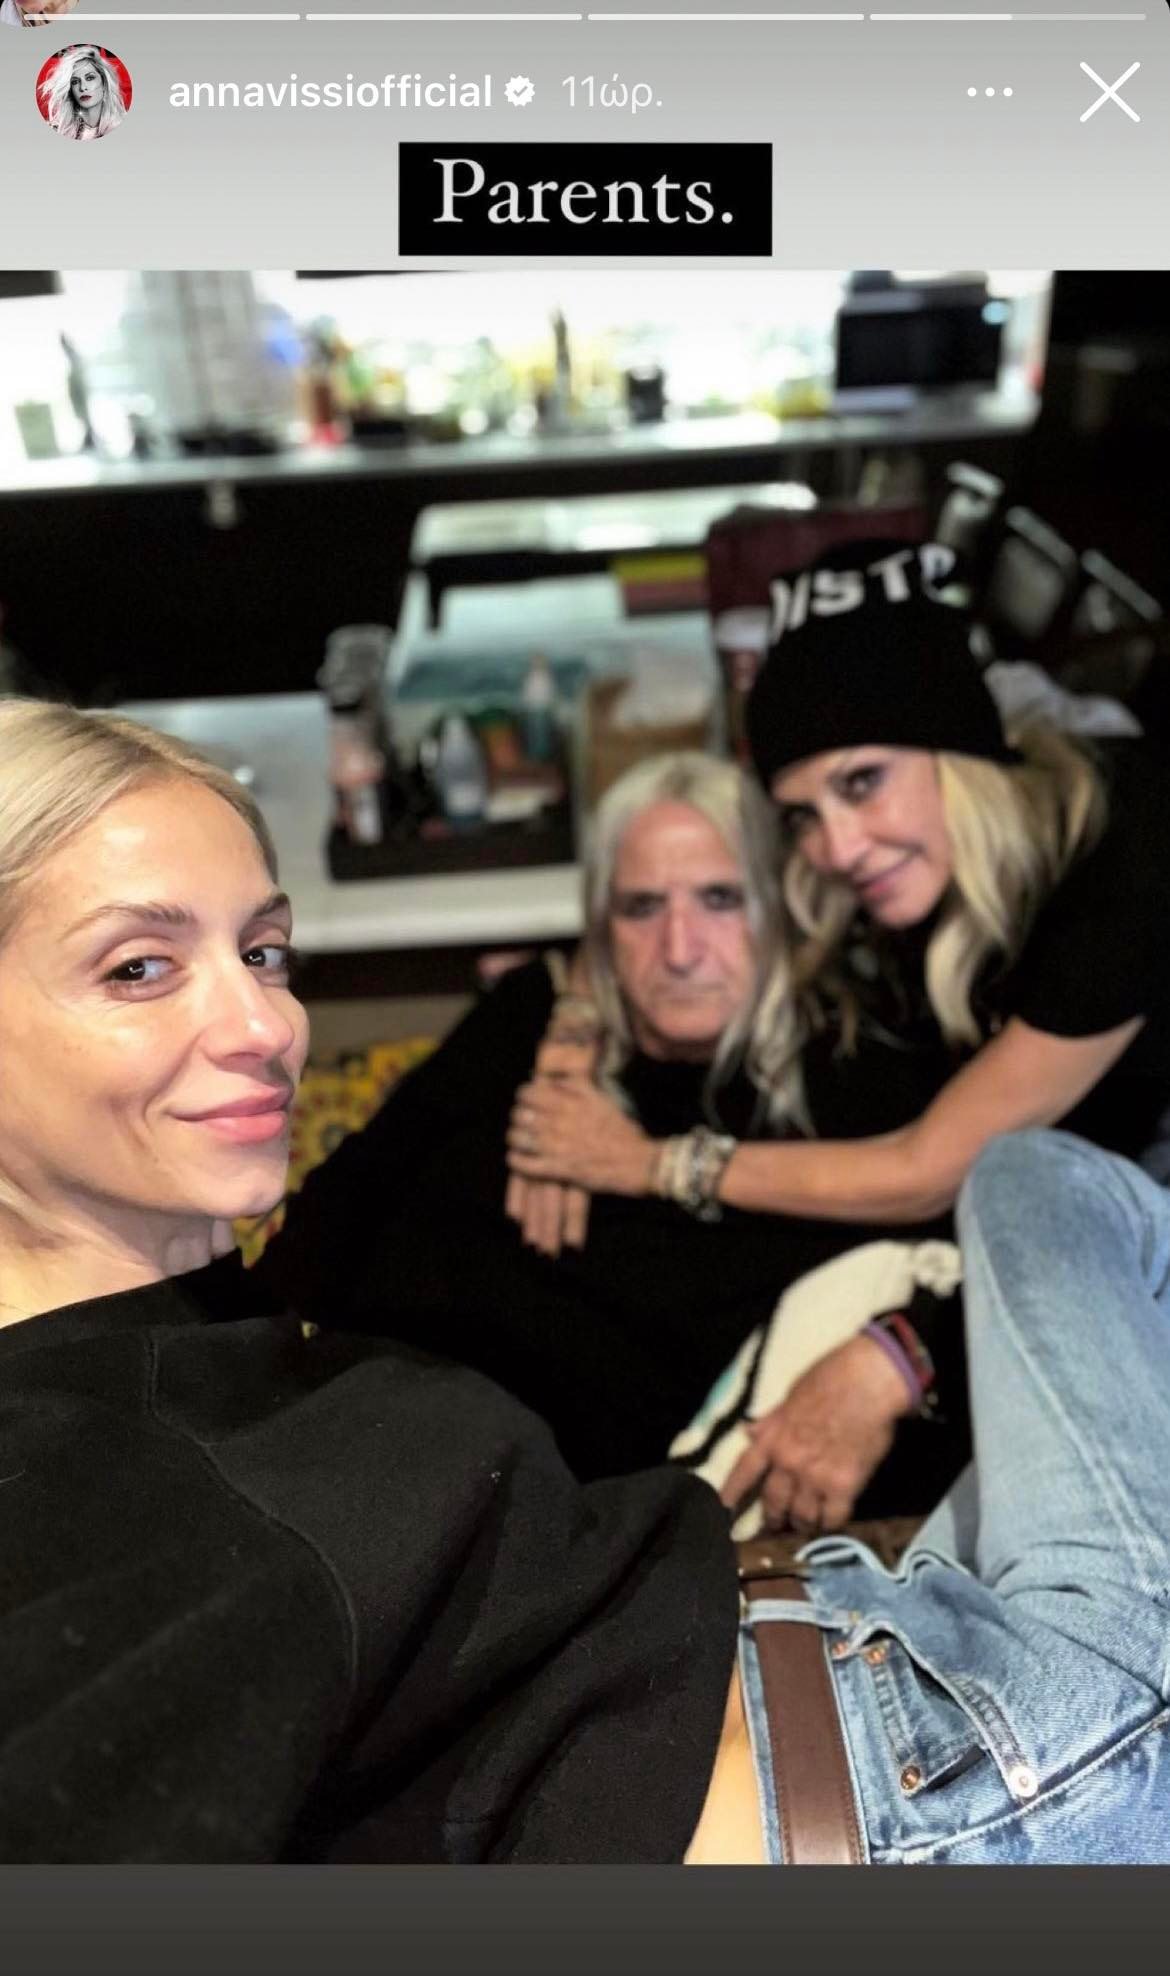 Άννα Βίσση- Νίκος Καρβέλας: Η συνάντηση με την κόρη τους, Σοφία και η κοινή φωτογραφία στο Instagram